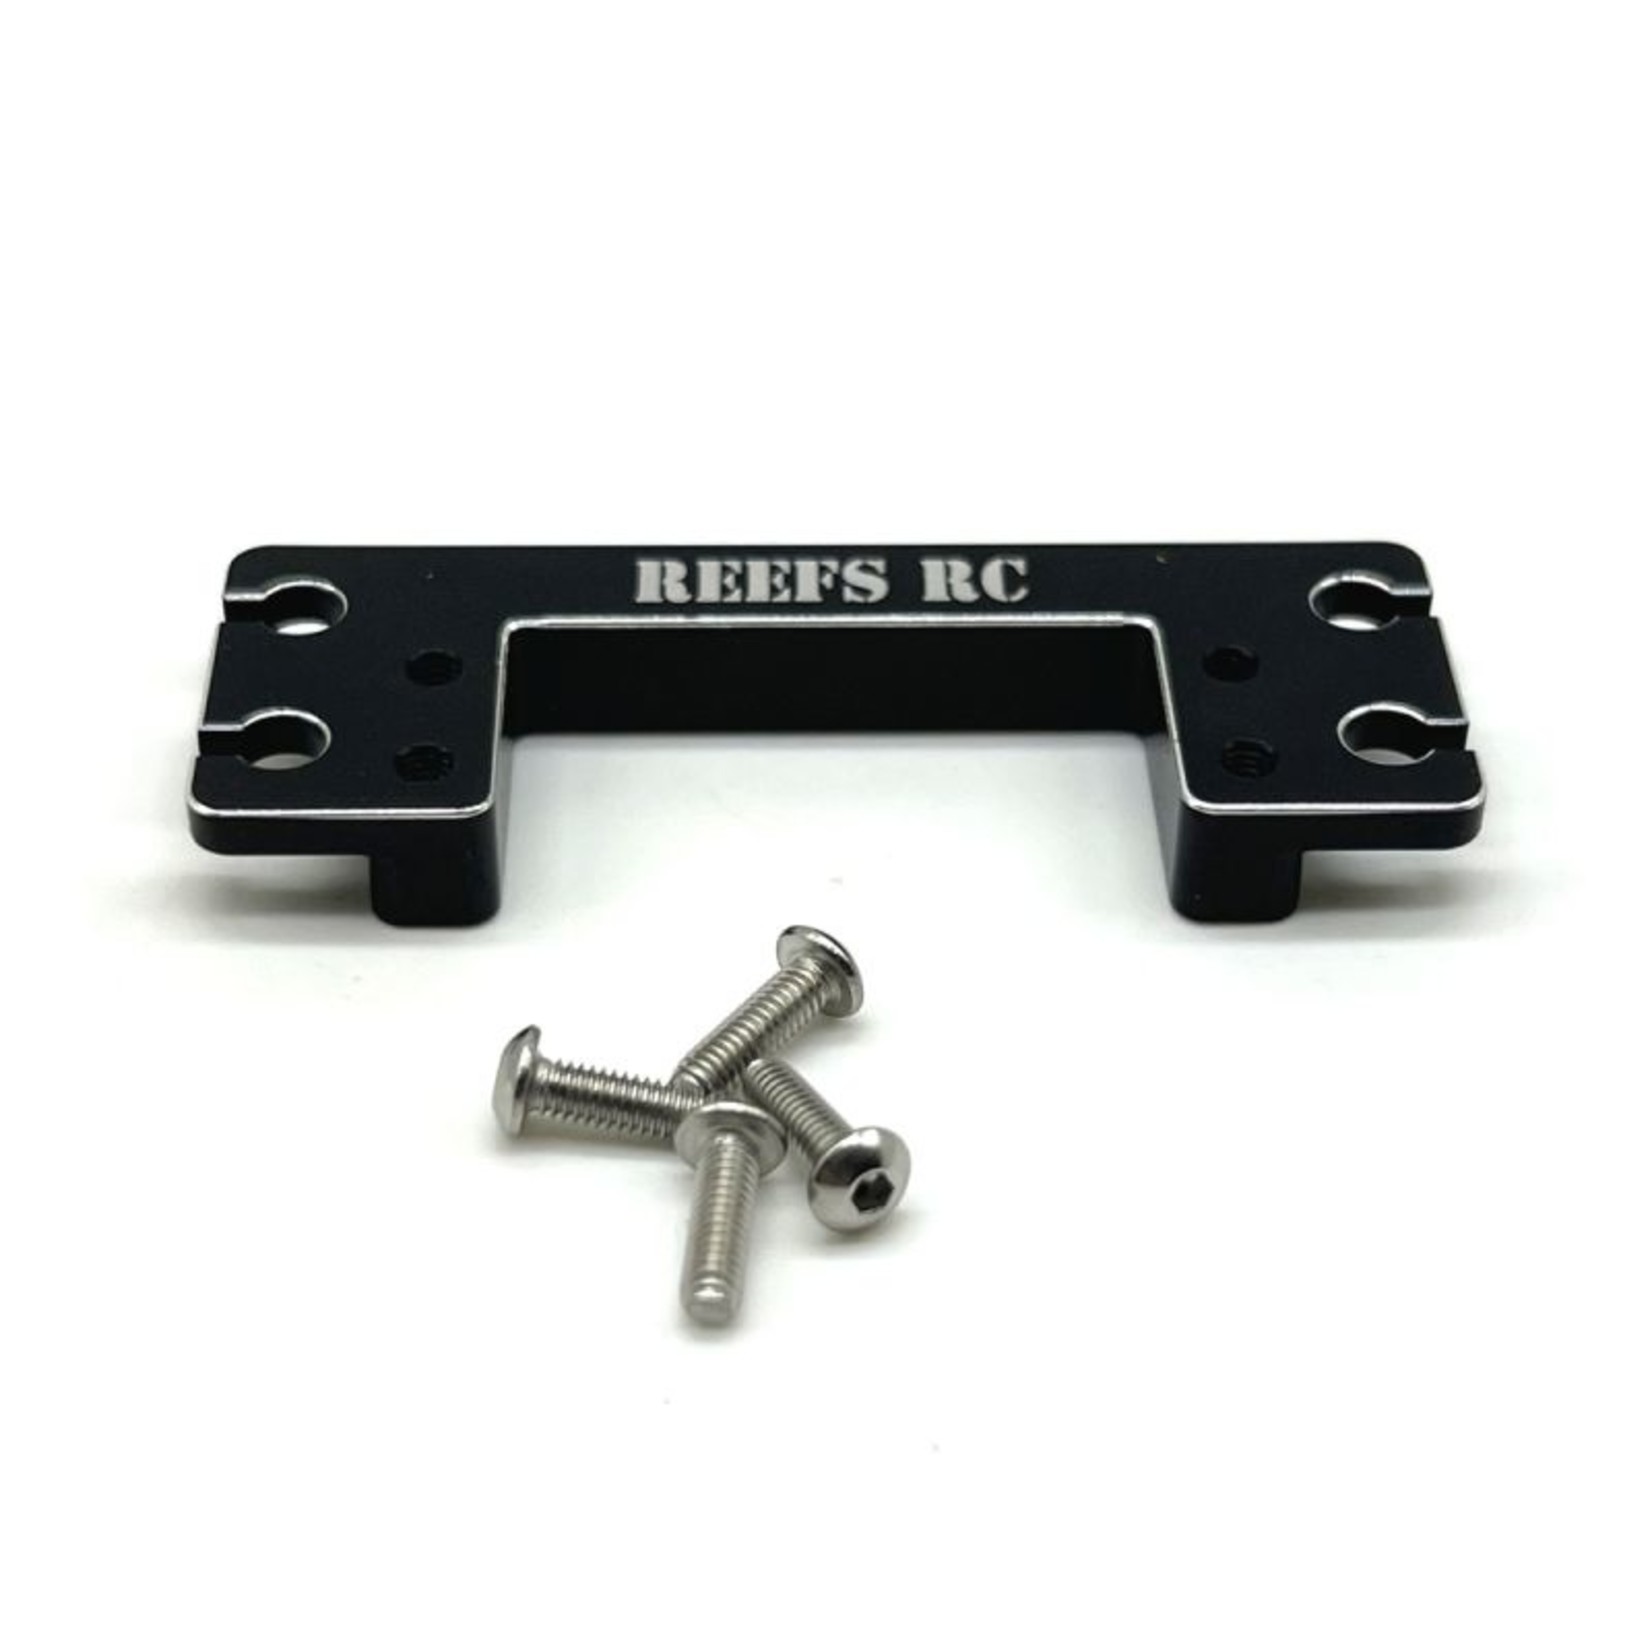 Reefs RC Reefs RC RAW100 CNC-Machined Aluminum Servo Mount (Mini to Standard) #REEFS150